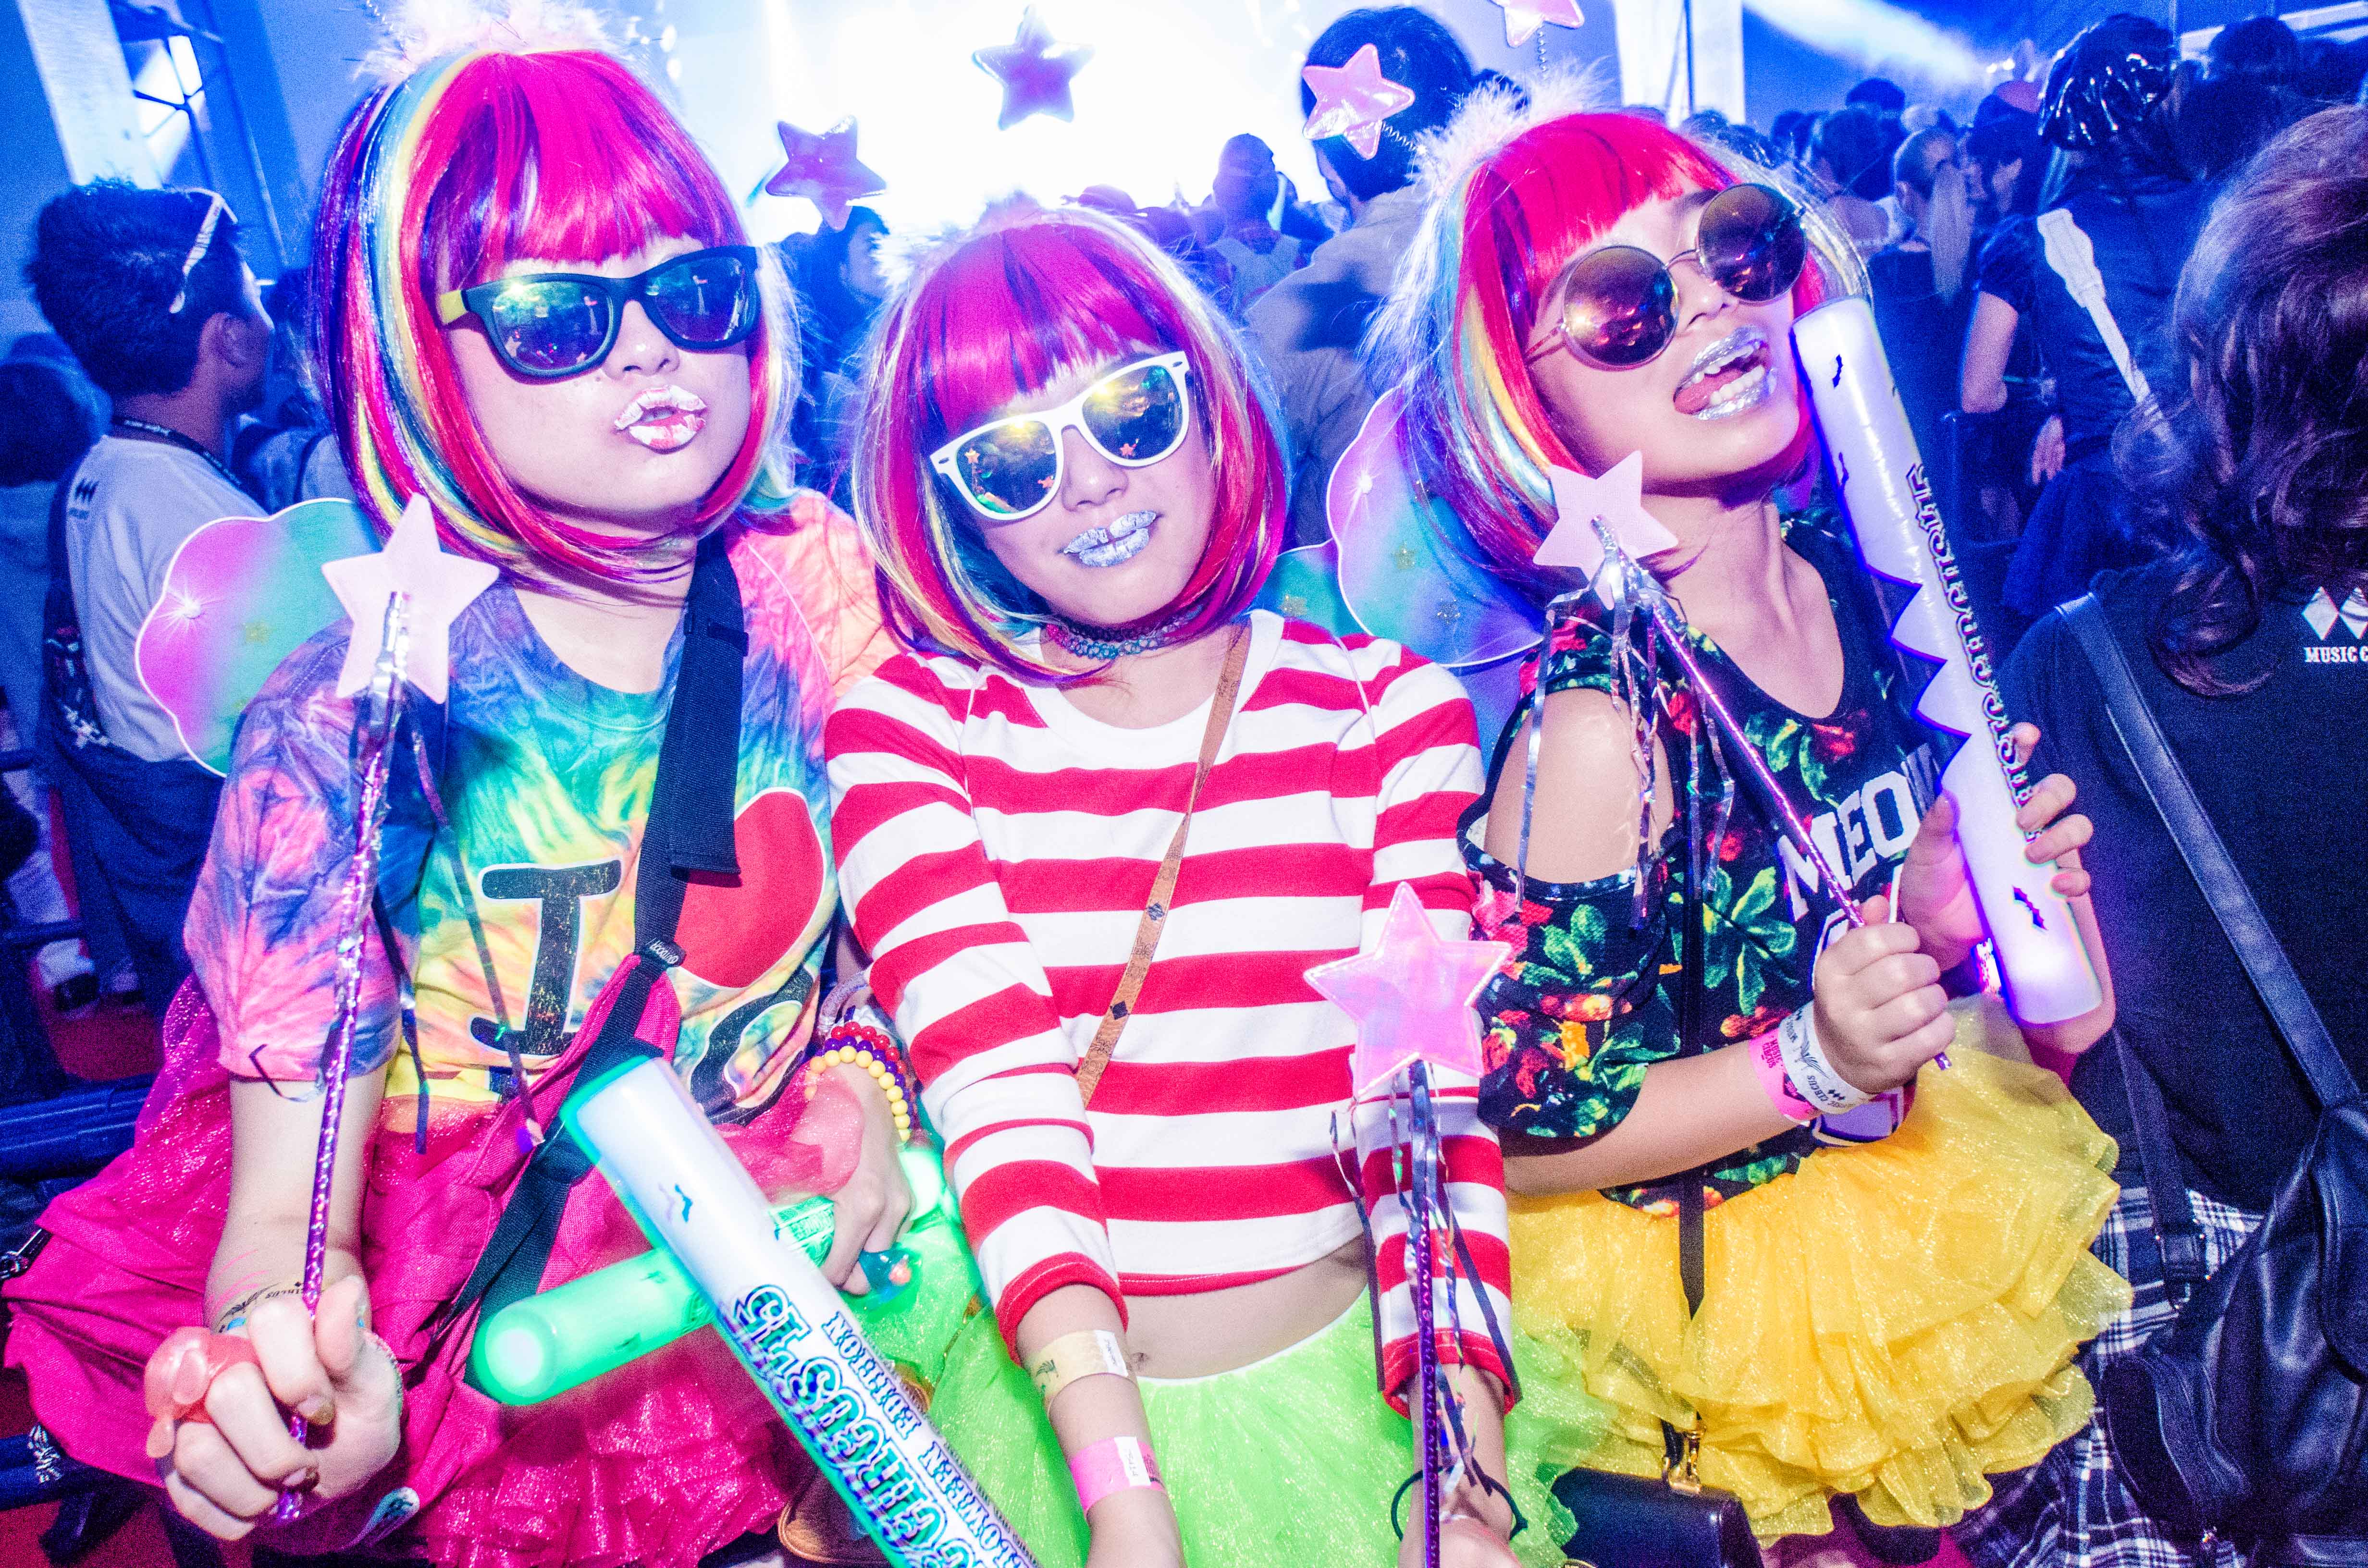 日本最大規模のハロウィンパーティーで関西発のmade In Japan音楽フェス Music Circus 16 今年はビーチで開催 Music Circus 実行委員会のプレスリリース